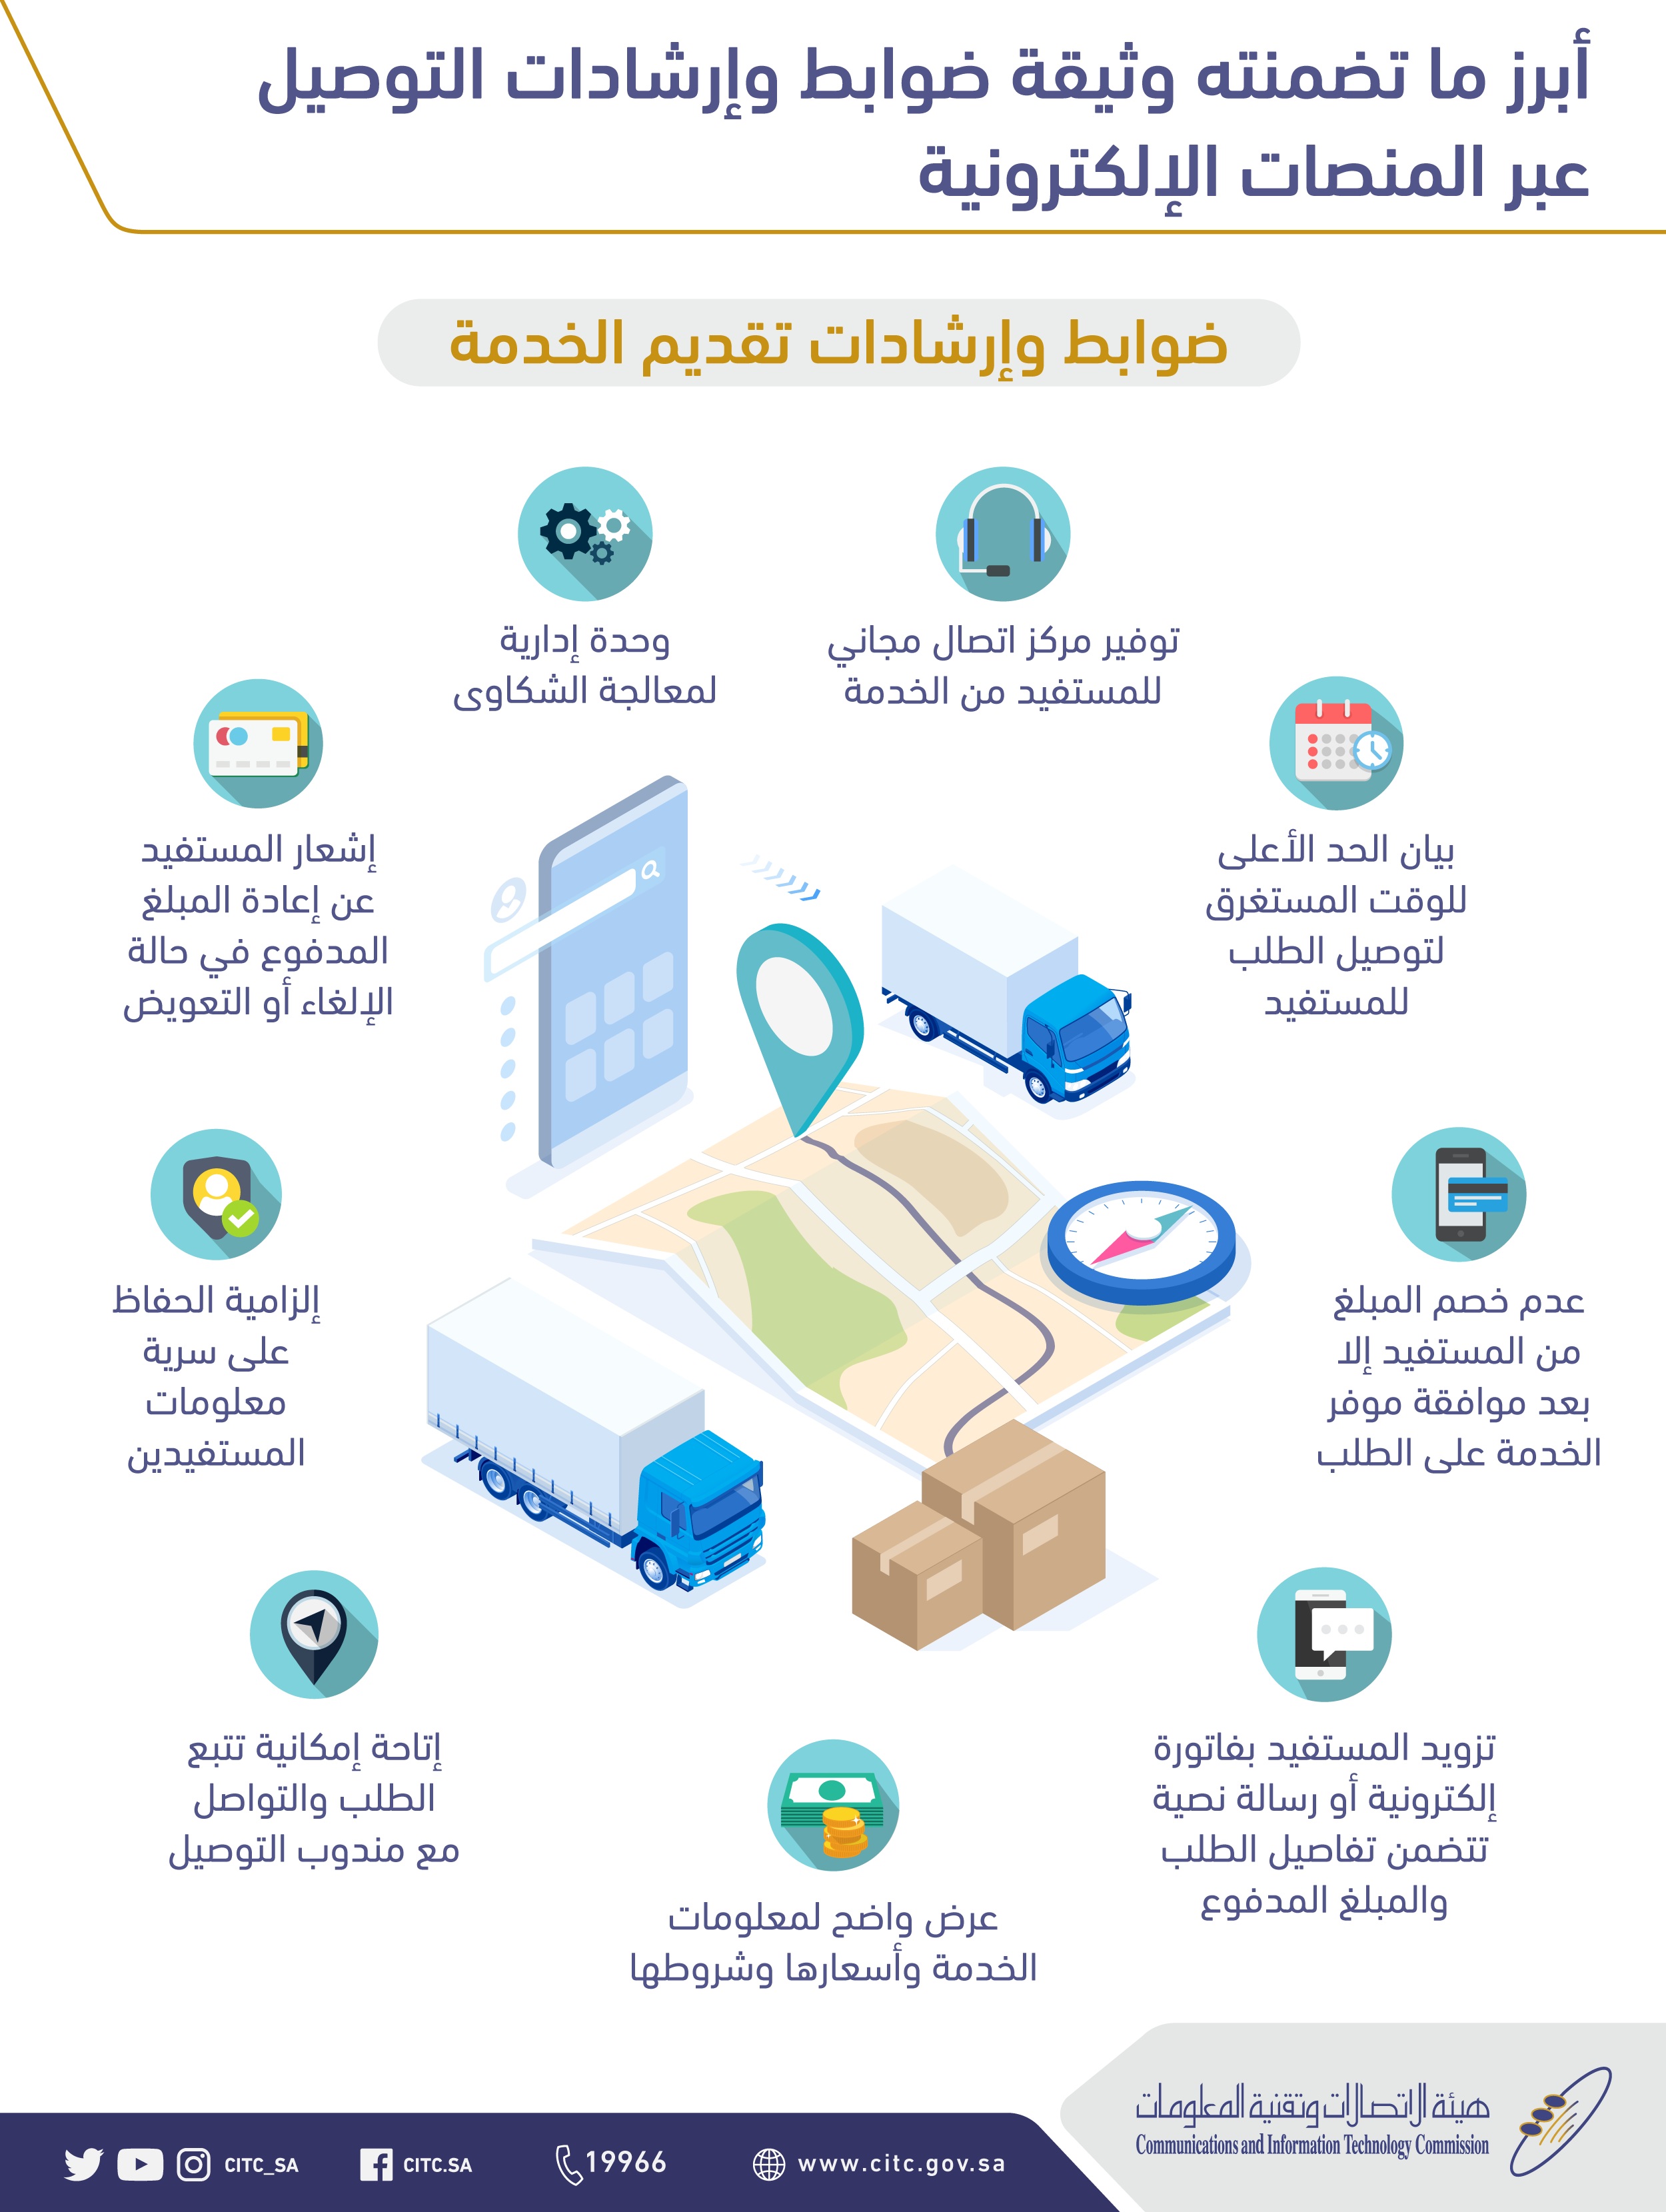 هيئة الاتصالات السعودية تصدر وثيقة الخدمات عبر المنصات الإلكترونية